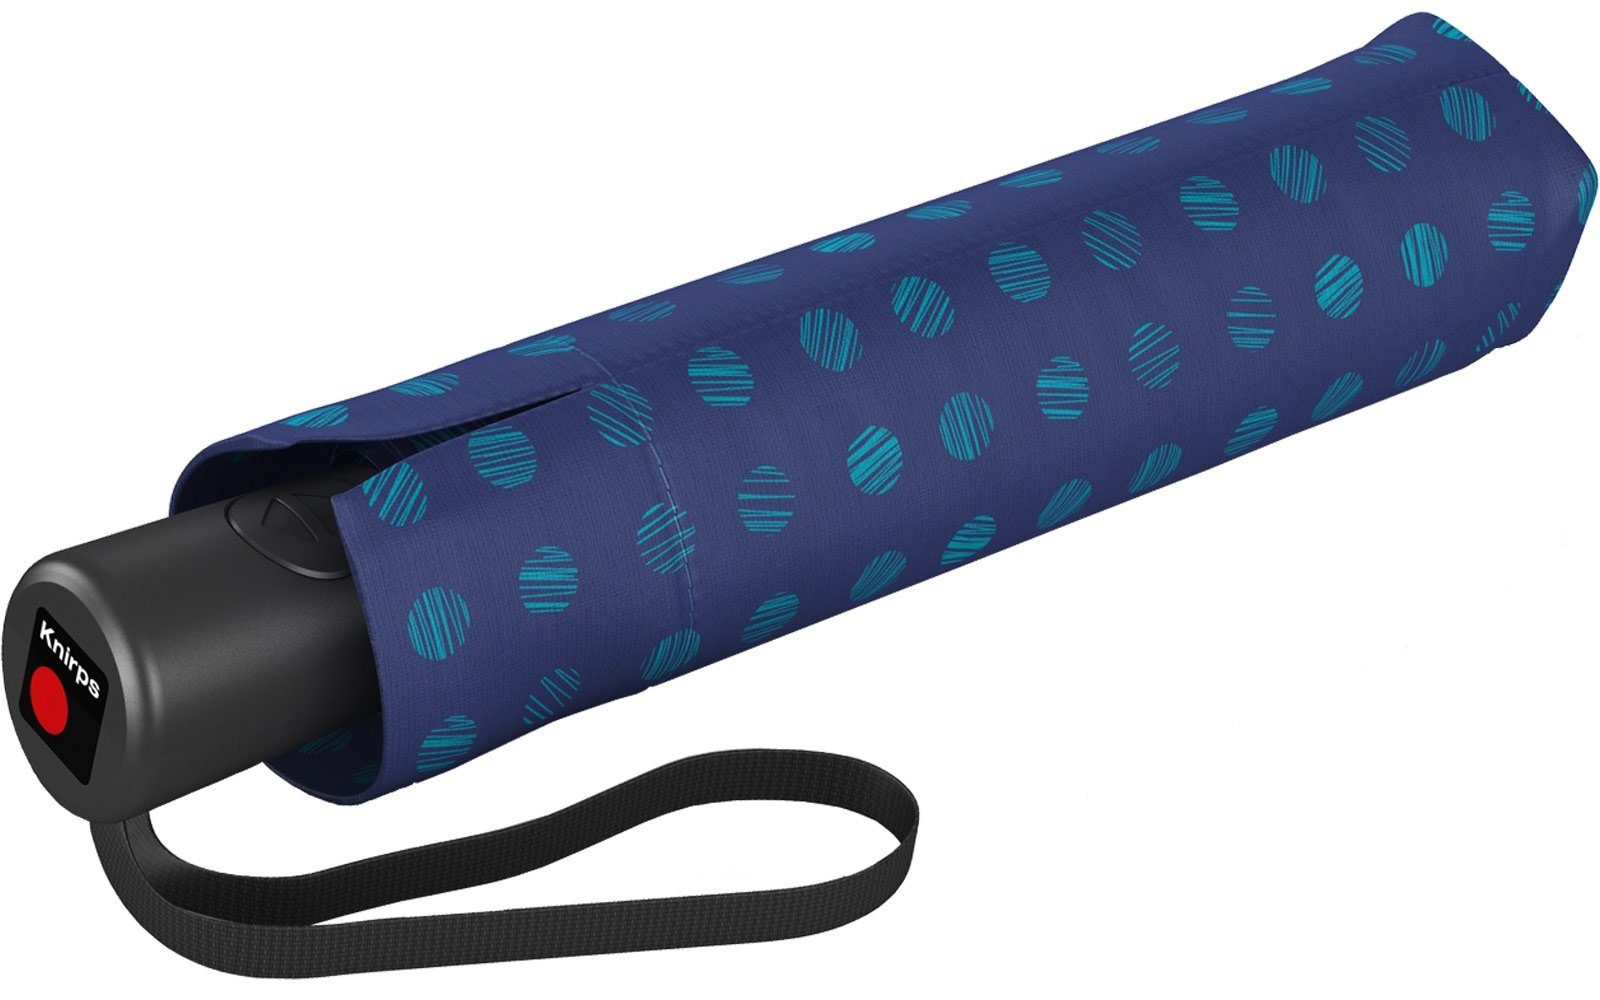 seine Taschenregenschirm mit stabiler besonders Auf-Zu-Automatik, Knirps® Schirm blau durch Automatik großer, praktisch